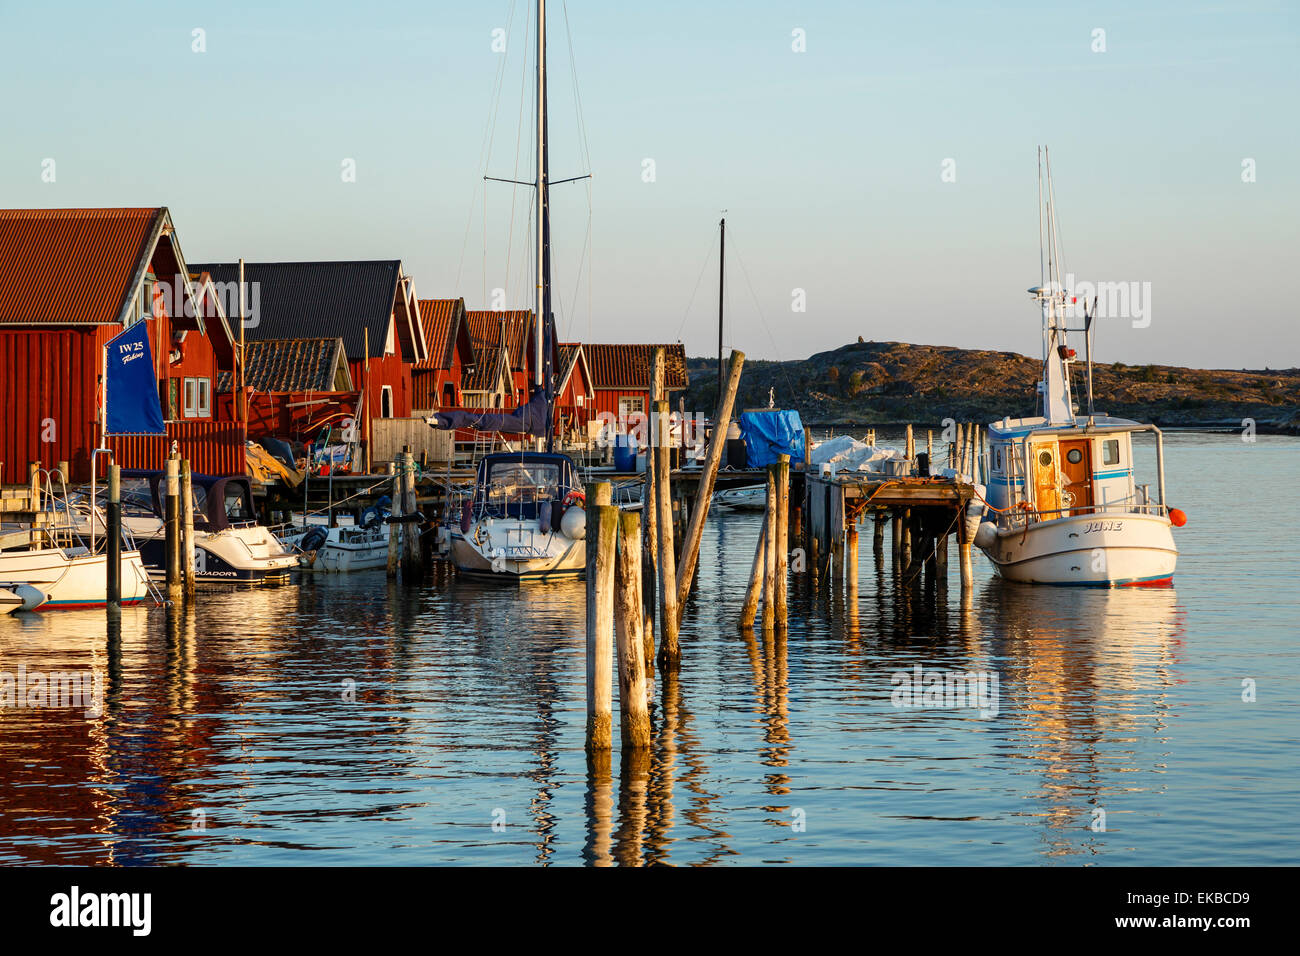 Barche e case in legno, Grebbestad, regione di Bohuslan, nella costa occidentale della Svezia, Scandinavia, Europa Foto Stock